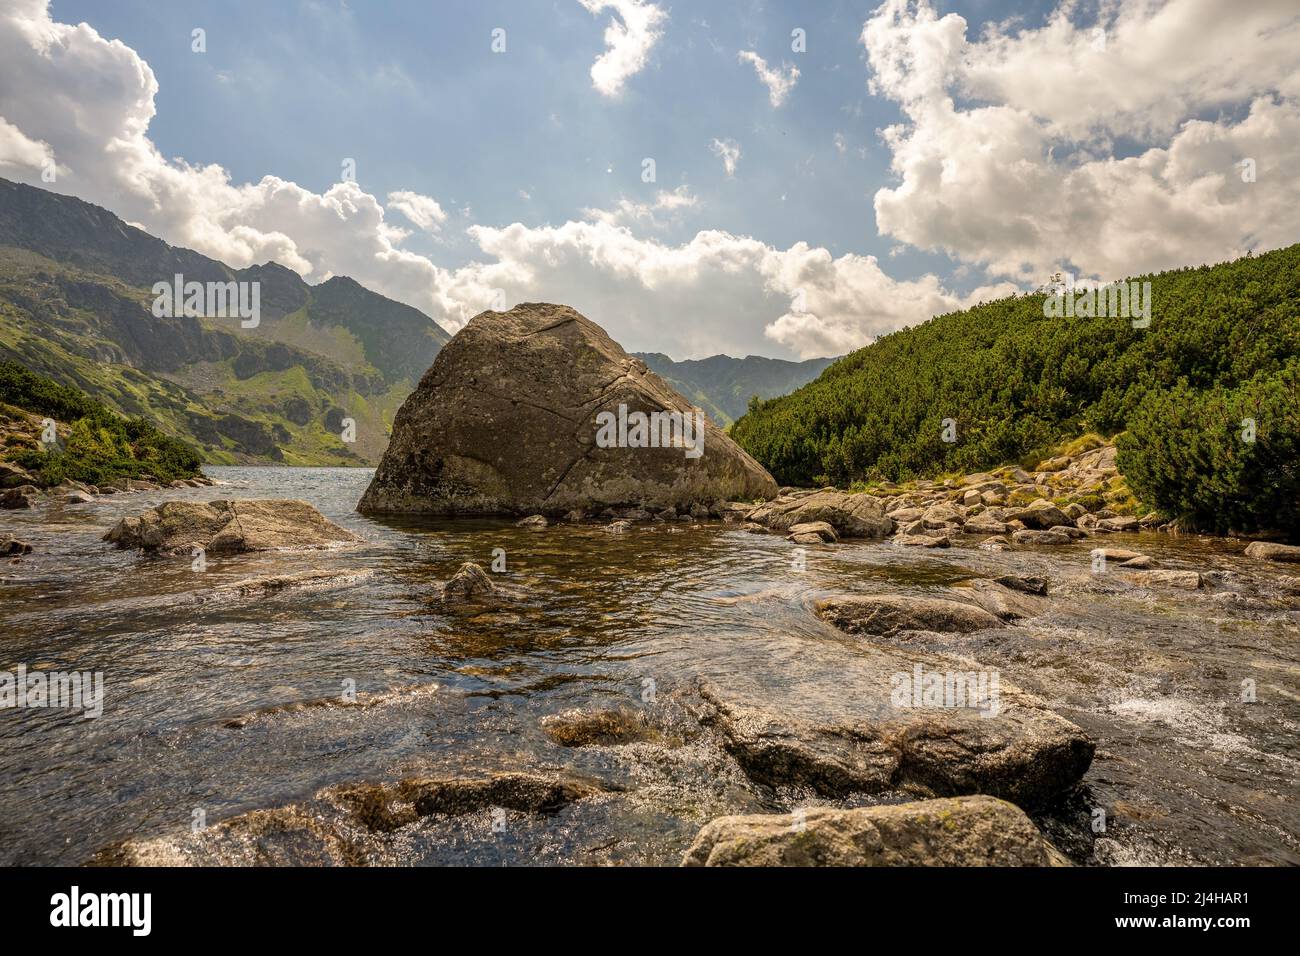 Una roccia gigante nel mezzo di un fiume ruscello nell'alta Tatra nella Valle dei cinque Laghi di Zakopane, in Polonia Foto Stock